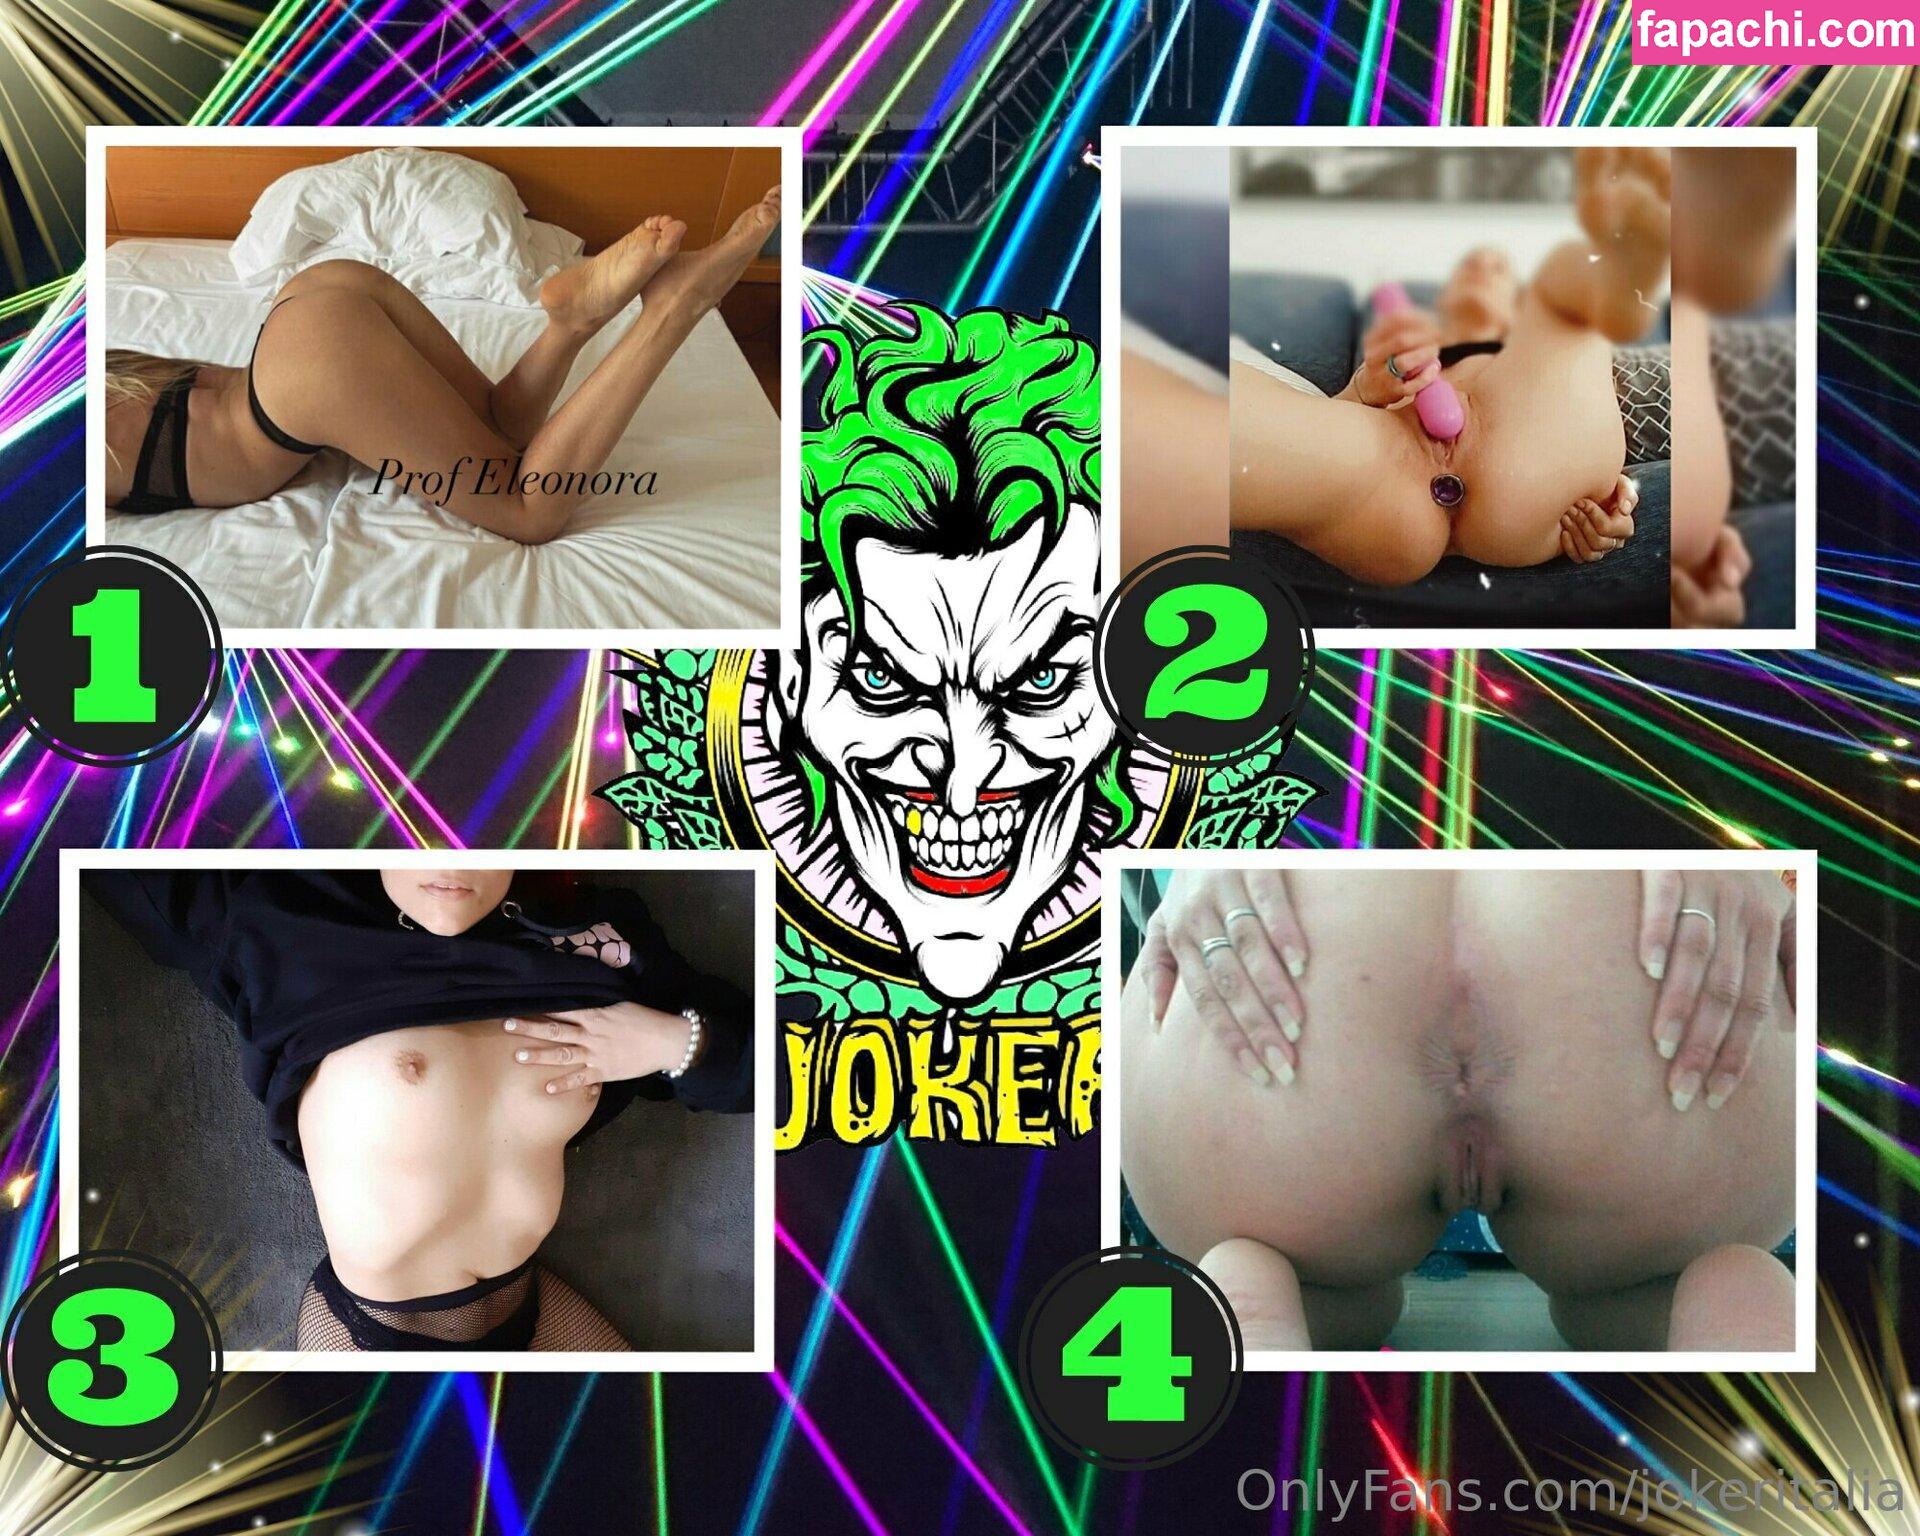 jokeritalia / jokeritalia_ofc leaked nude photo #0399 from OnlyFans/Patreon